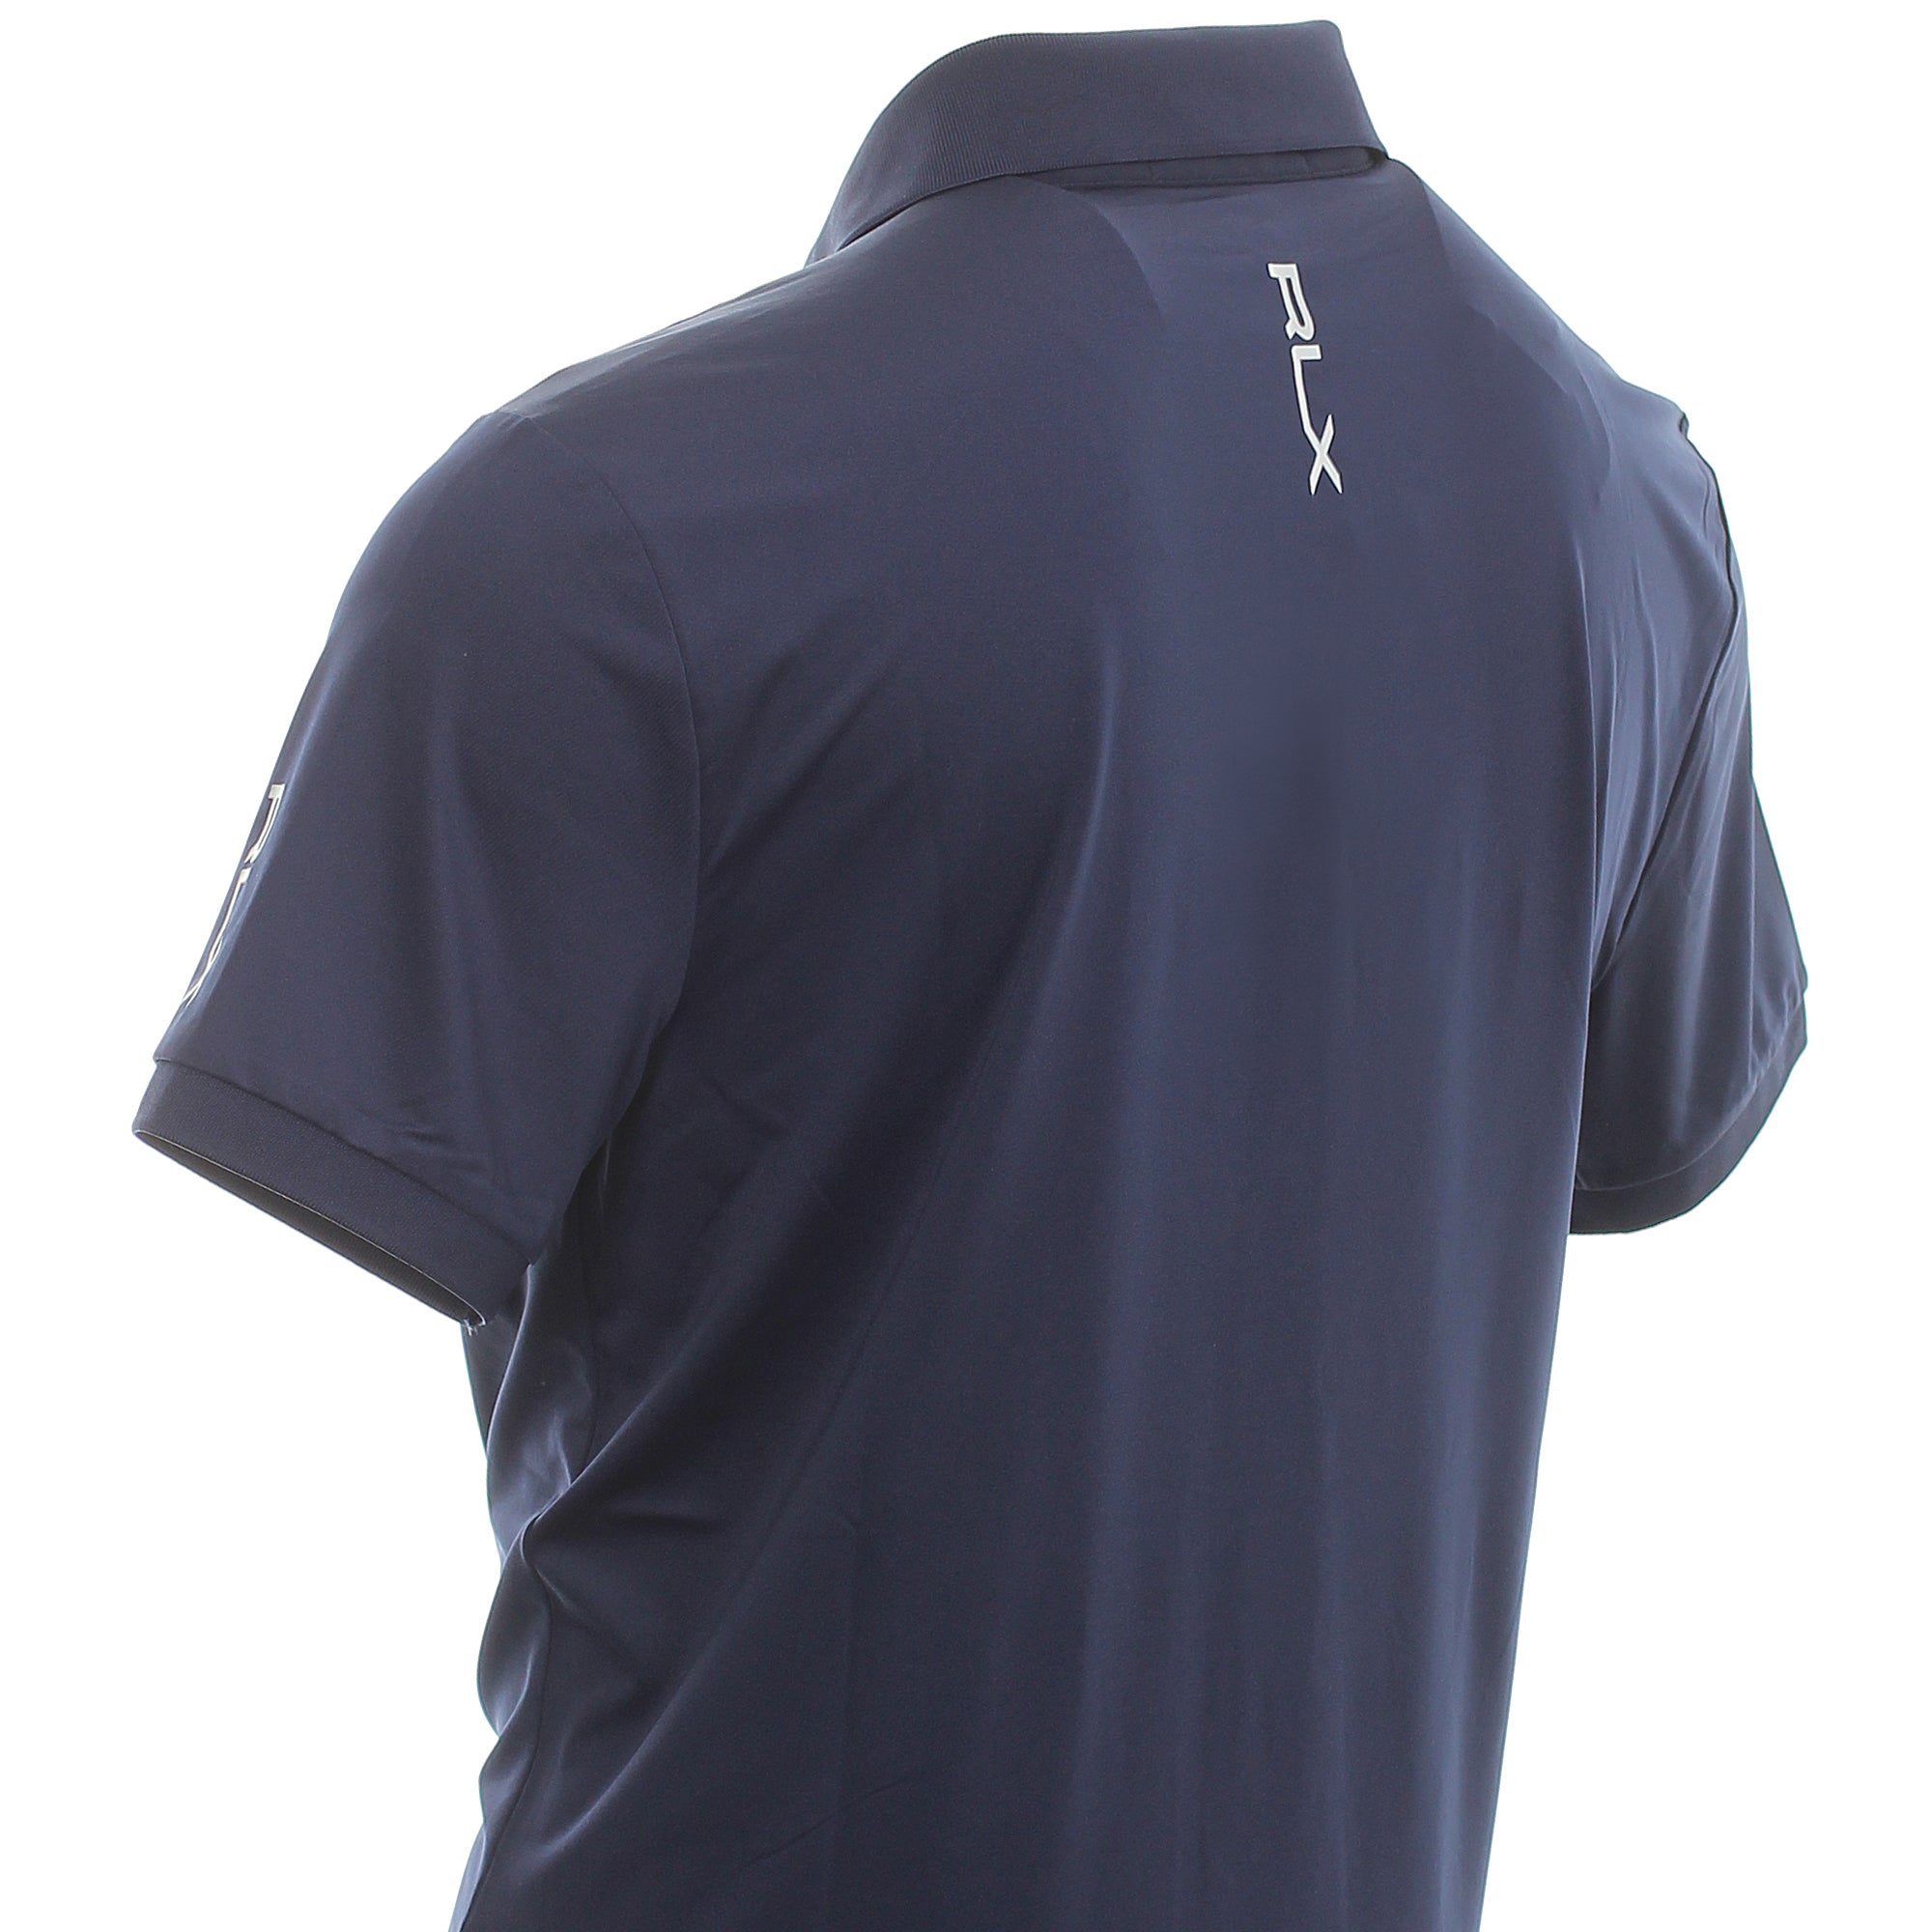 rlx-ralph-lauren-lightweight-jersey-polo-shirt-785865186-french-navy-001